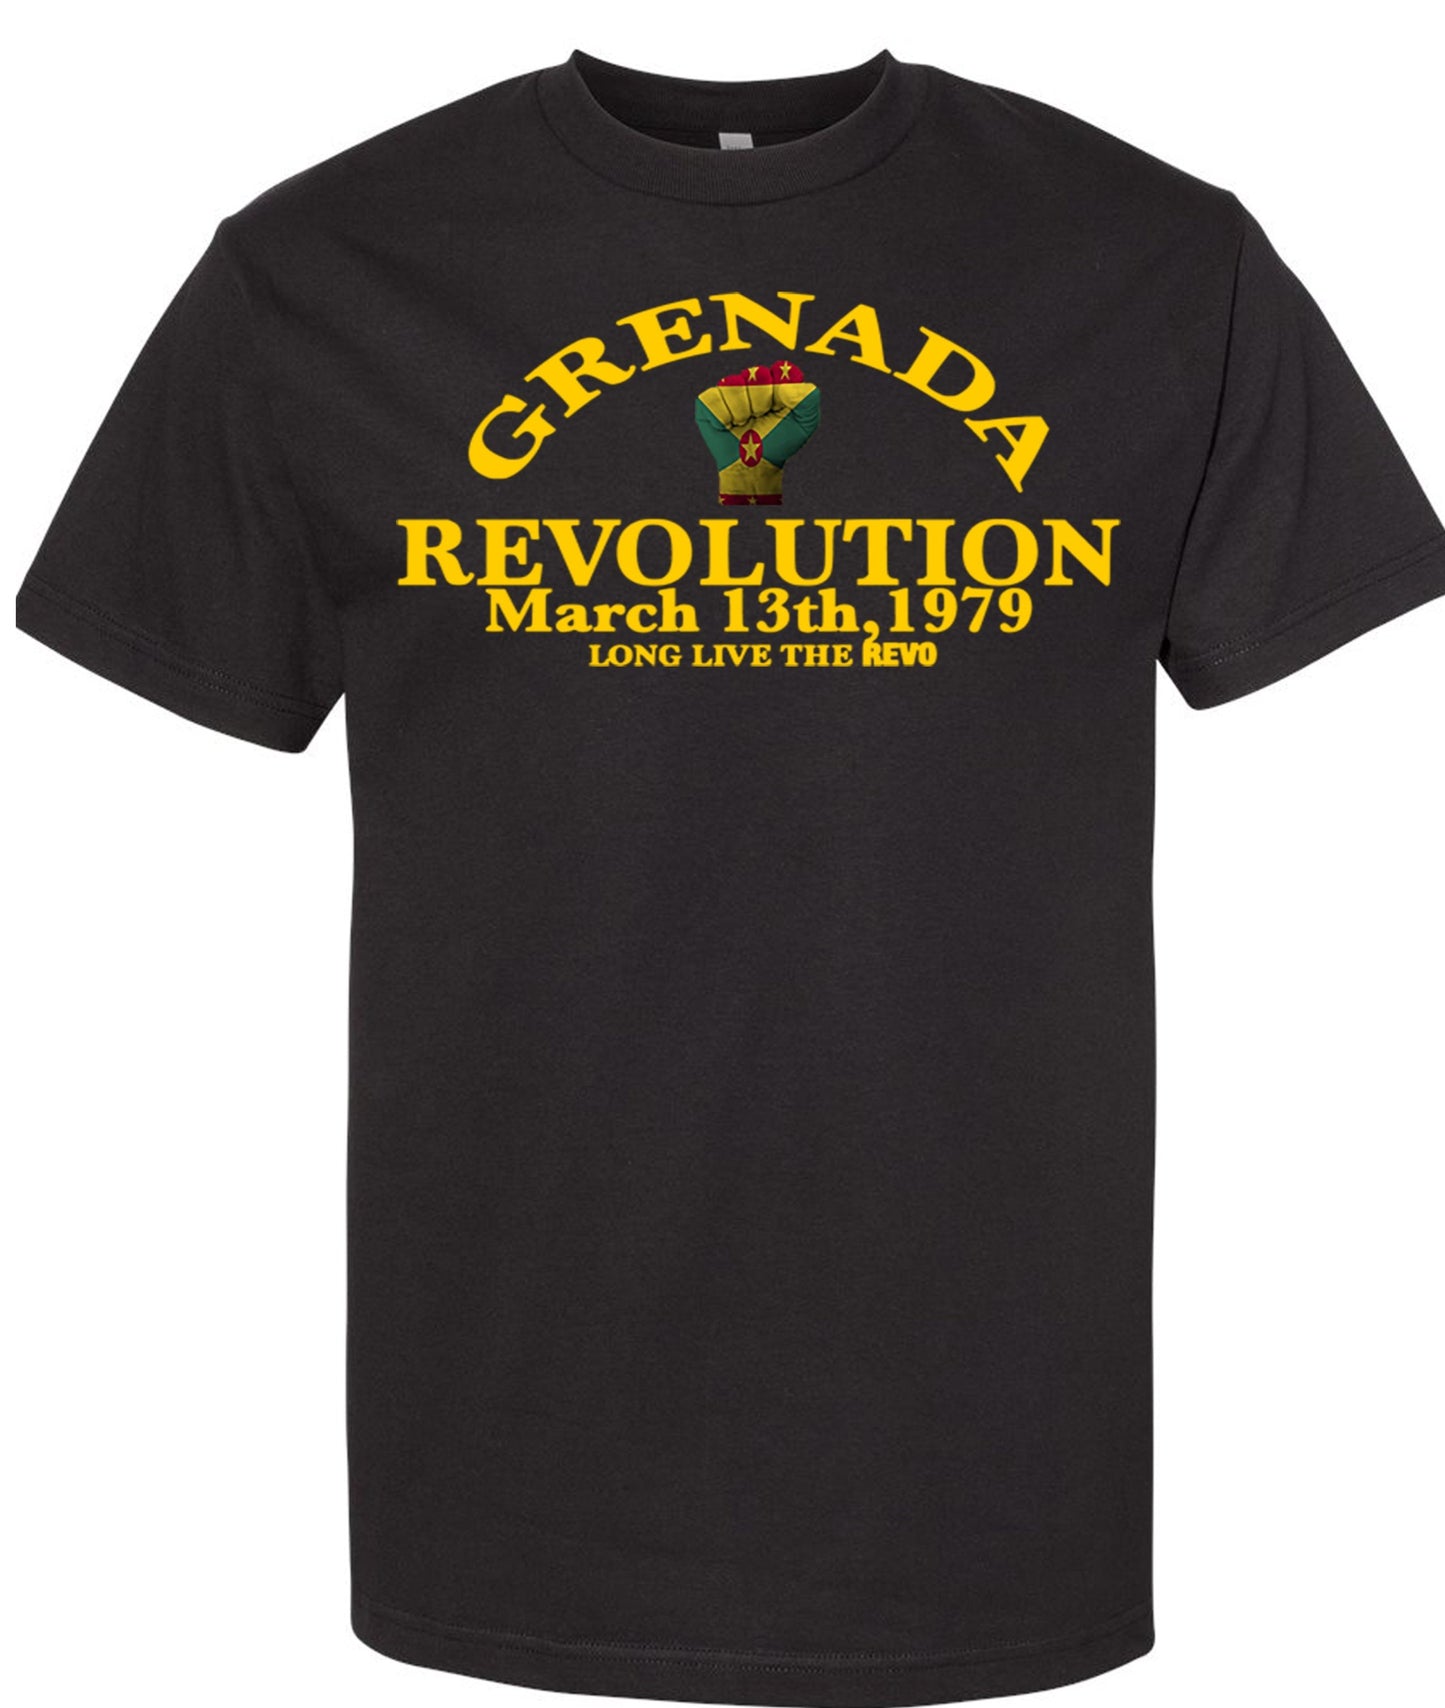 Grenada Revo T-shirt